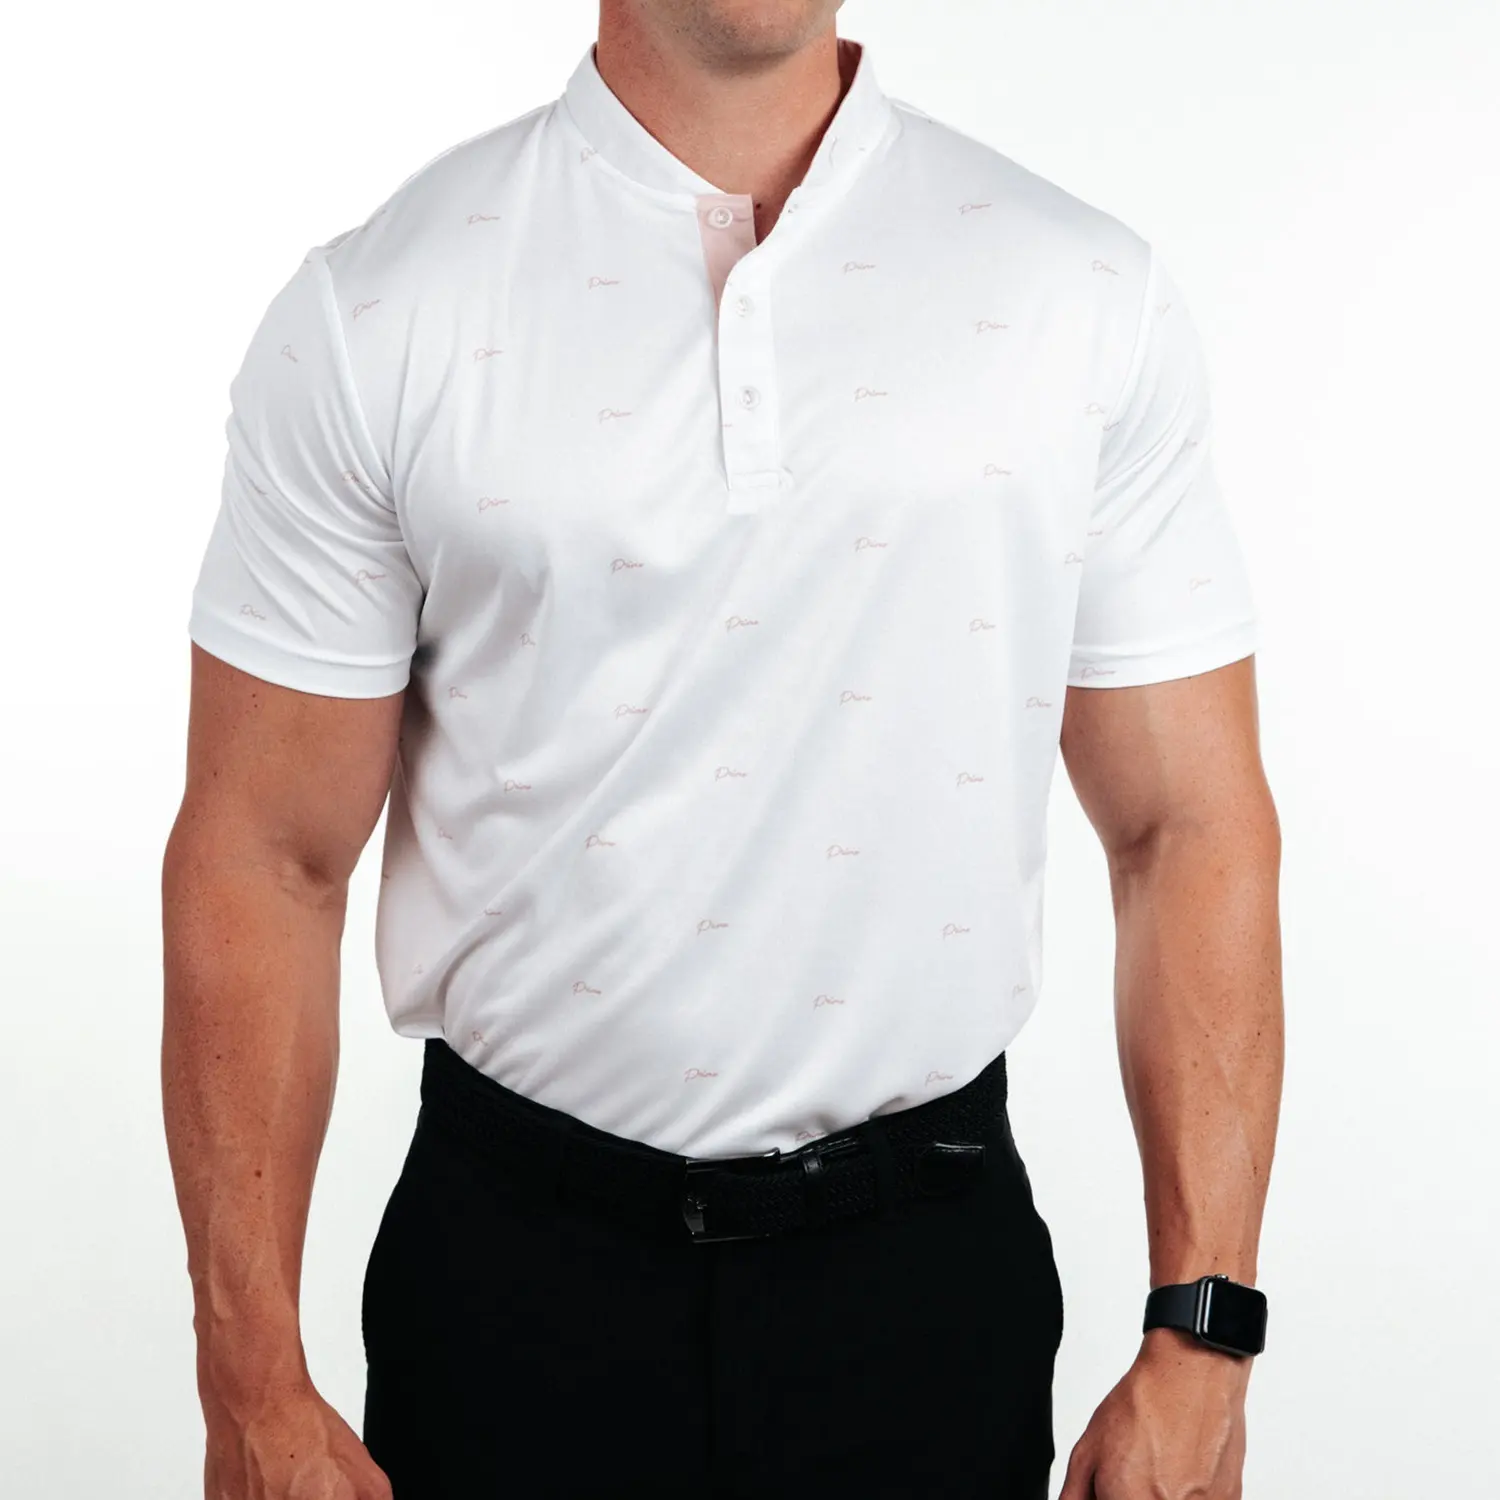 Nueva llegada Durable Golf Polo Shirt Poliéster Transpirable Impresión digital Blade Collar Golf Shirt para hombres